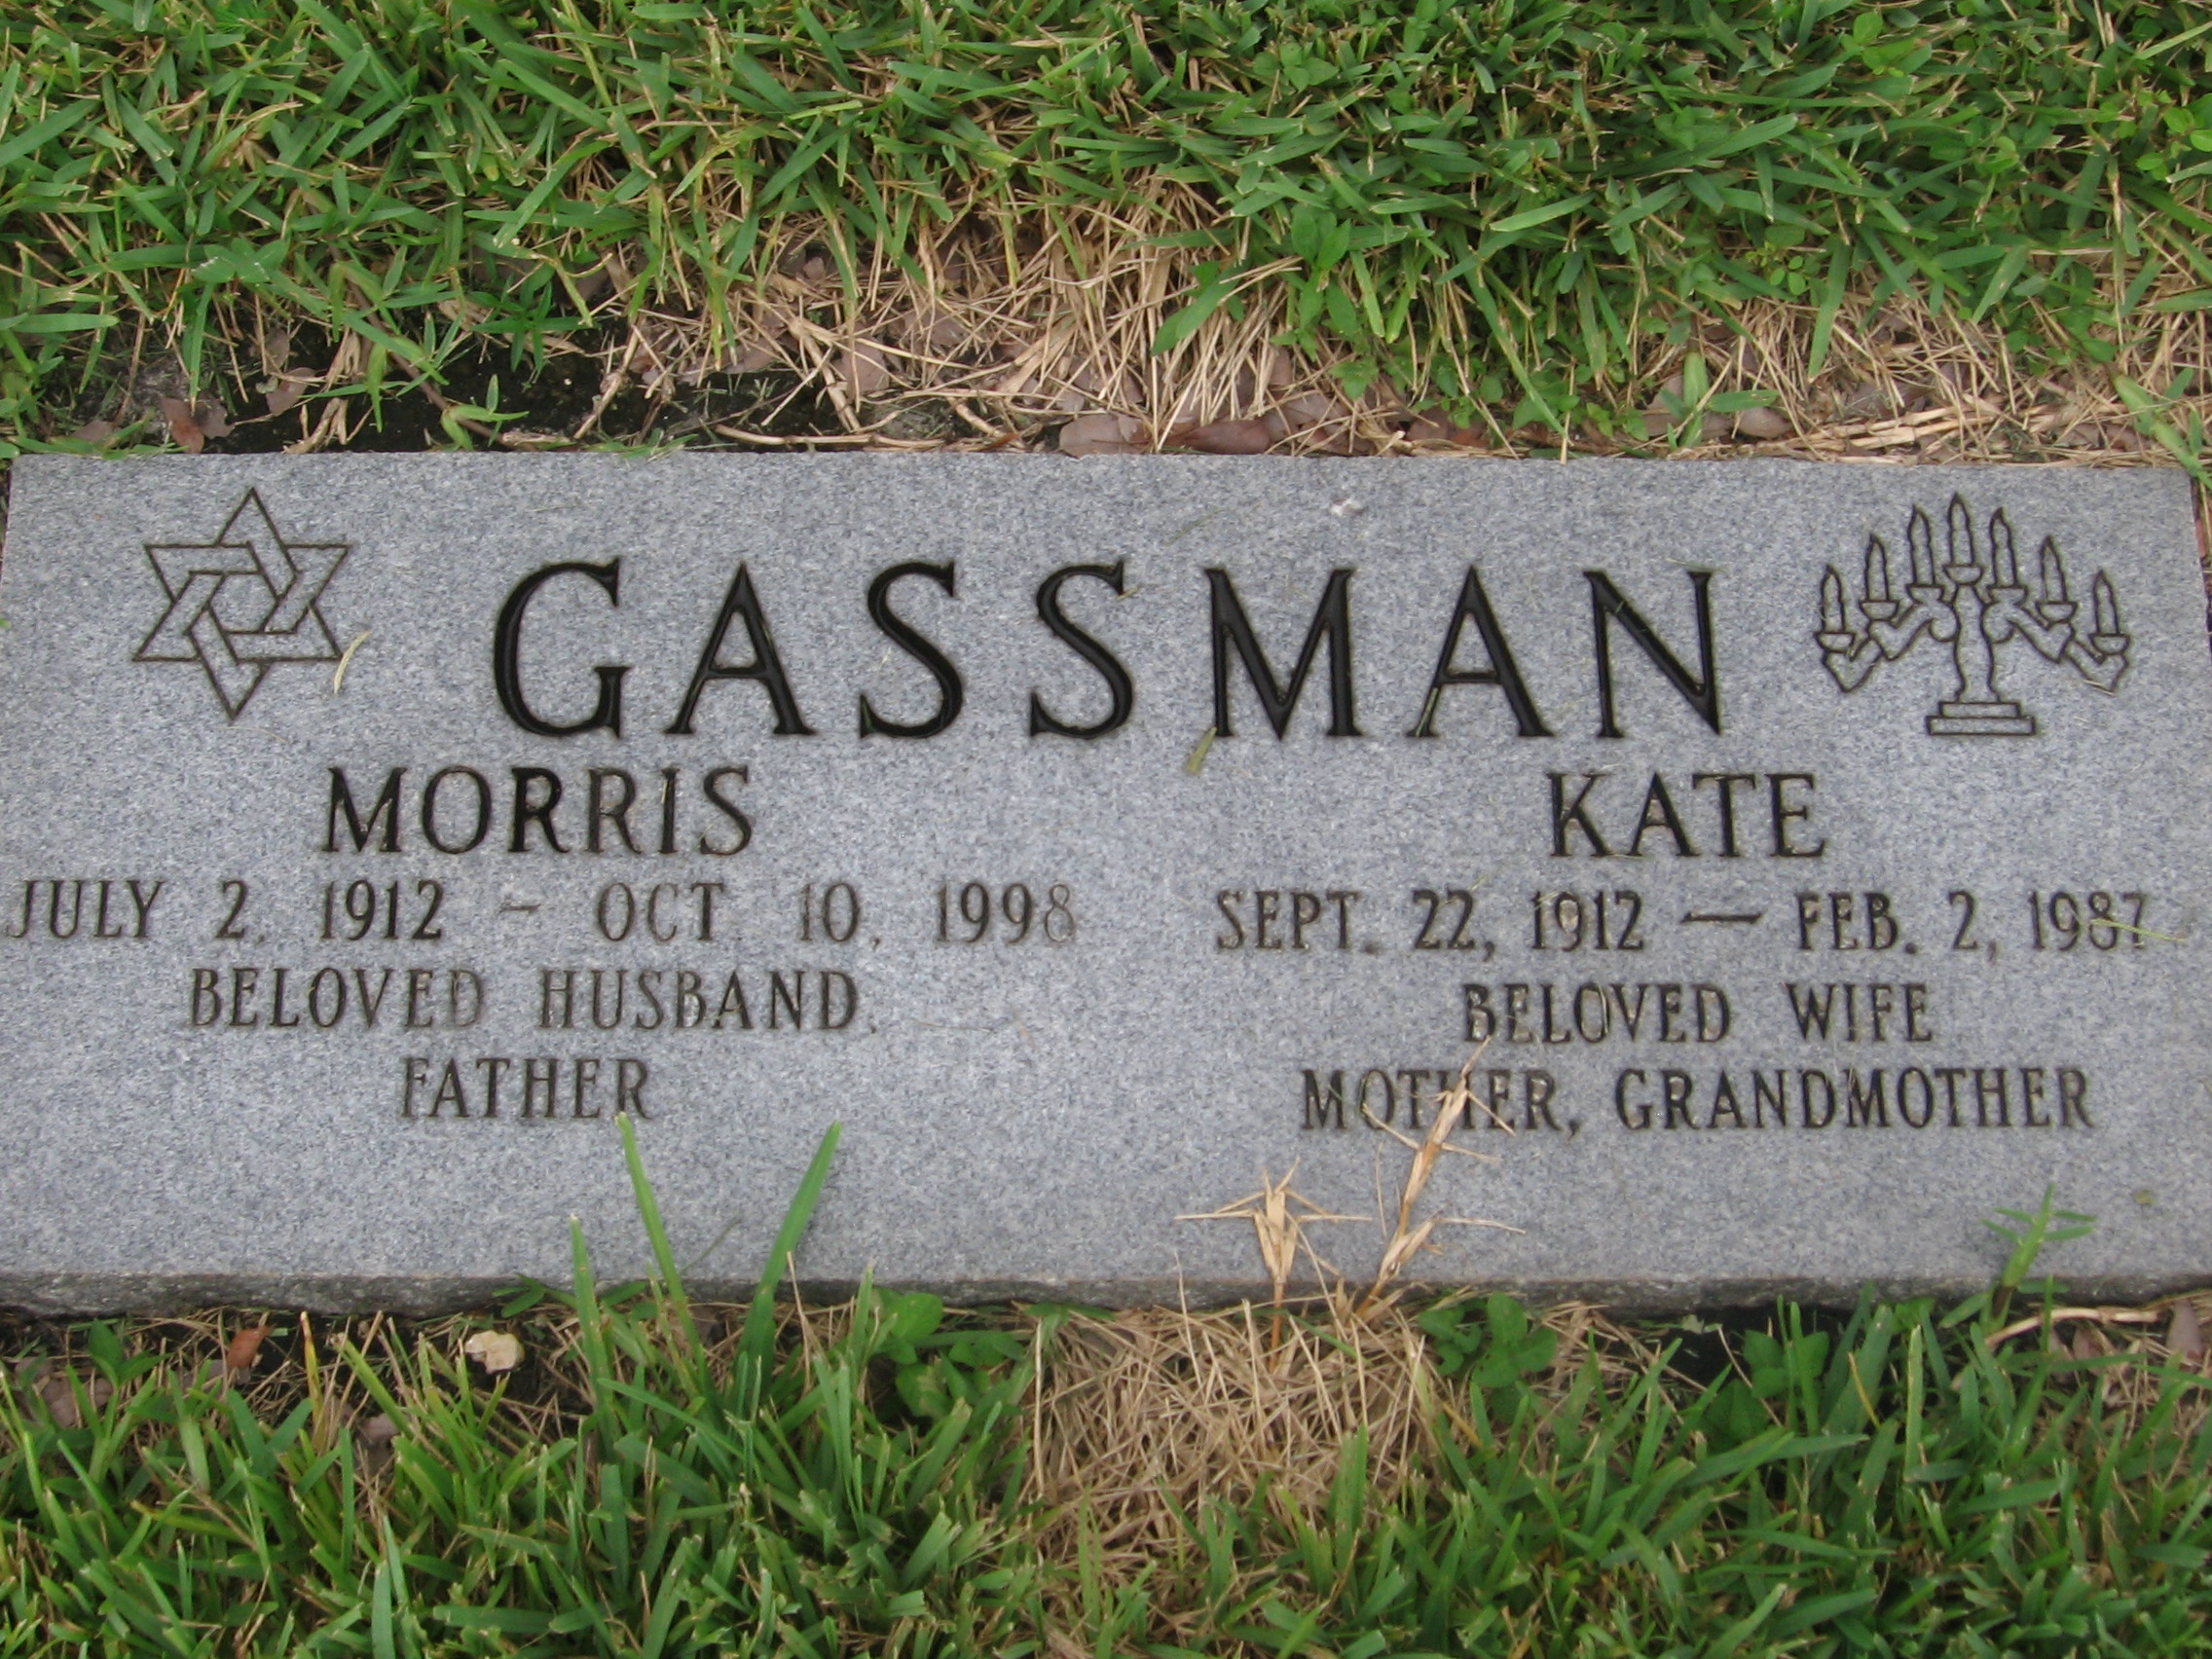 Kate Gassman